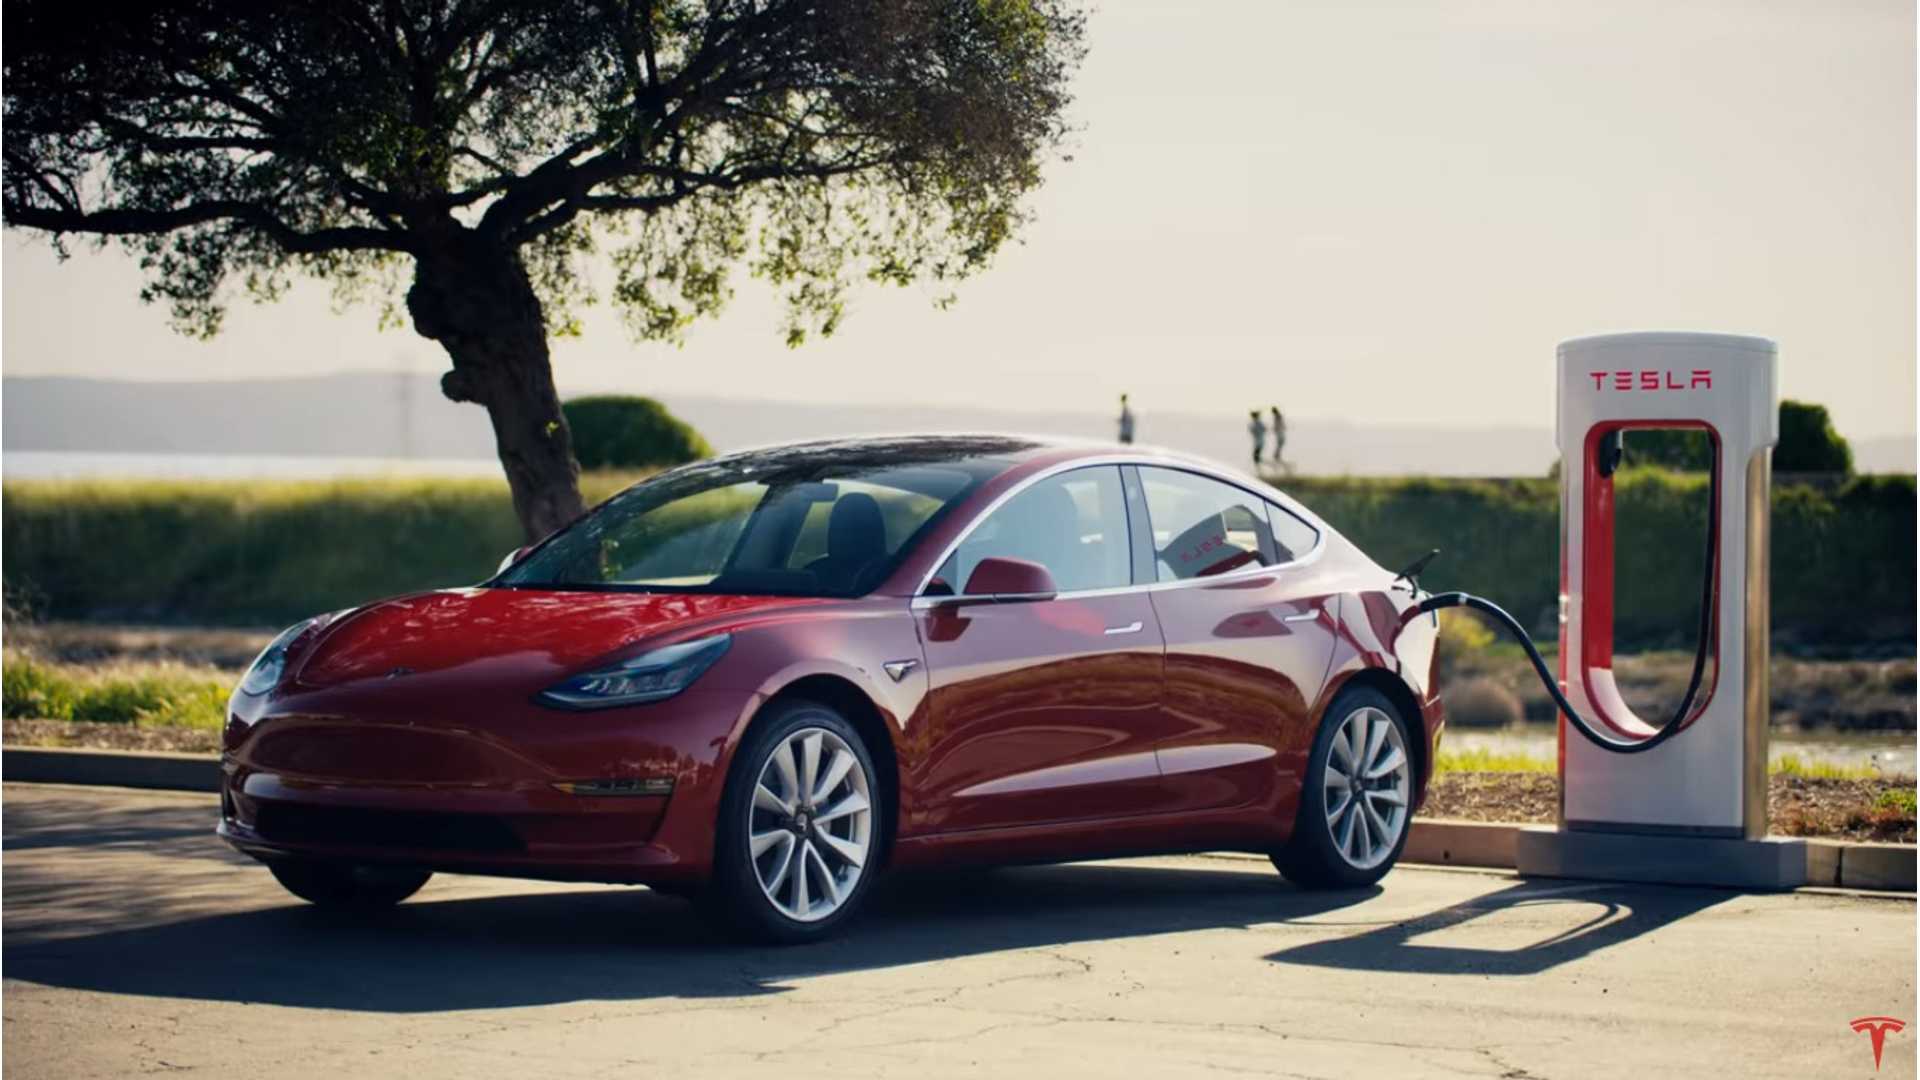 Tesla Model 3 on supercharger